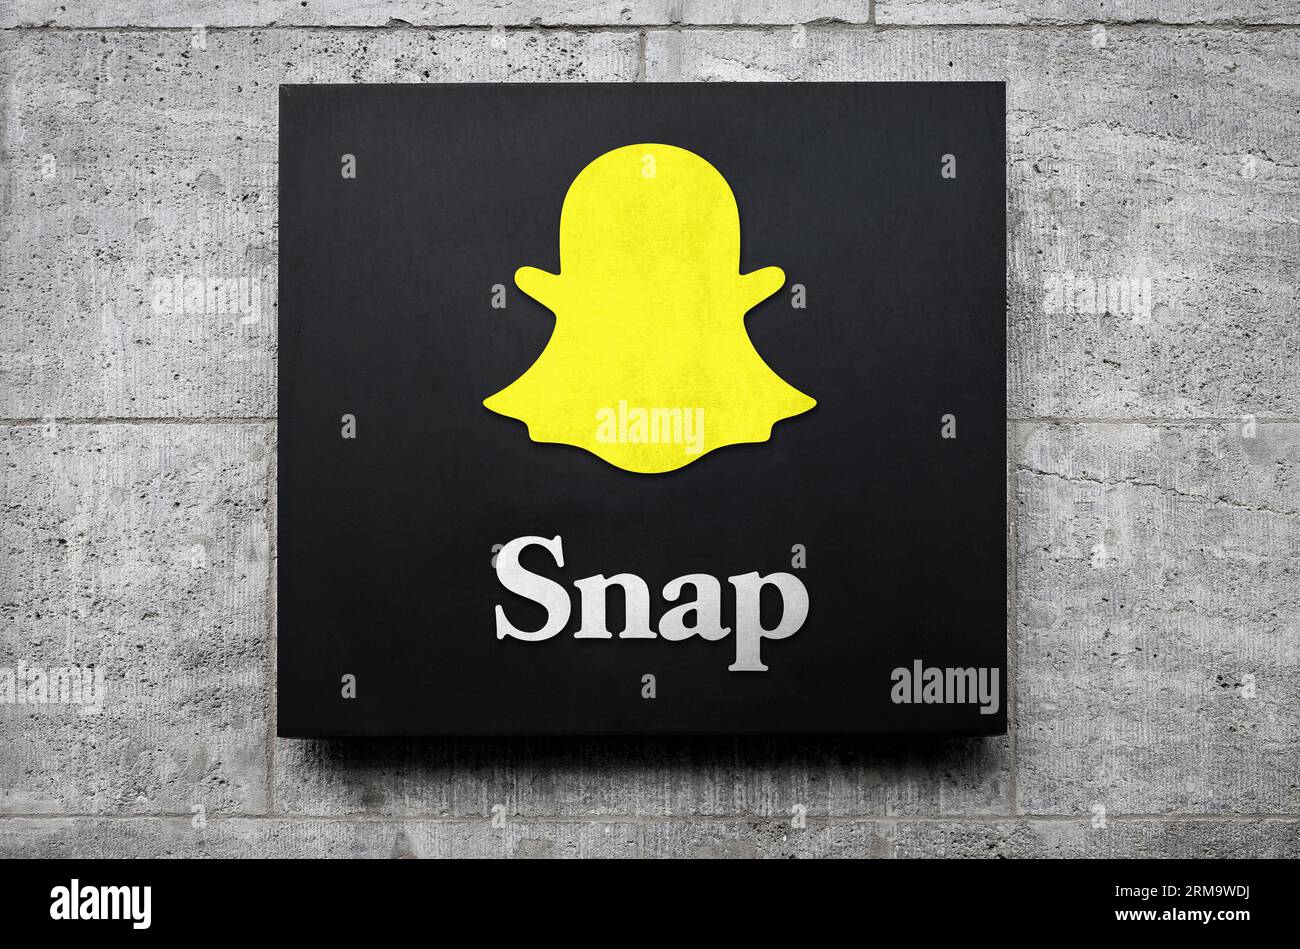 Snap - société américaine de caméras et de médias sociaux Banque D'Images